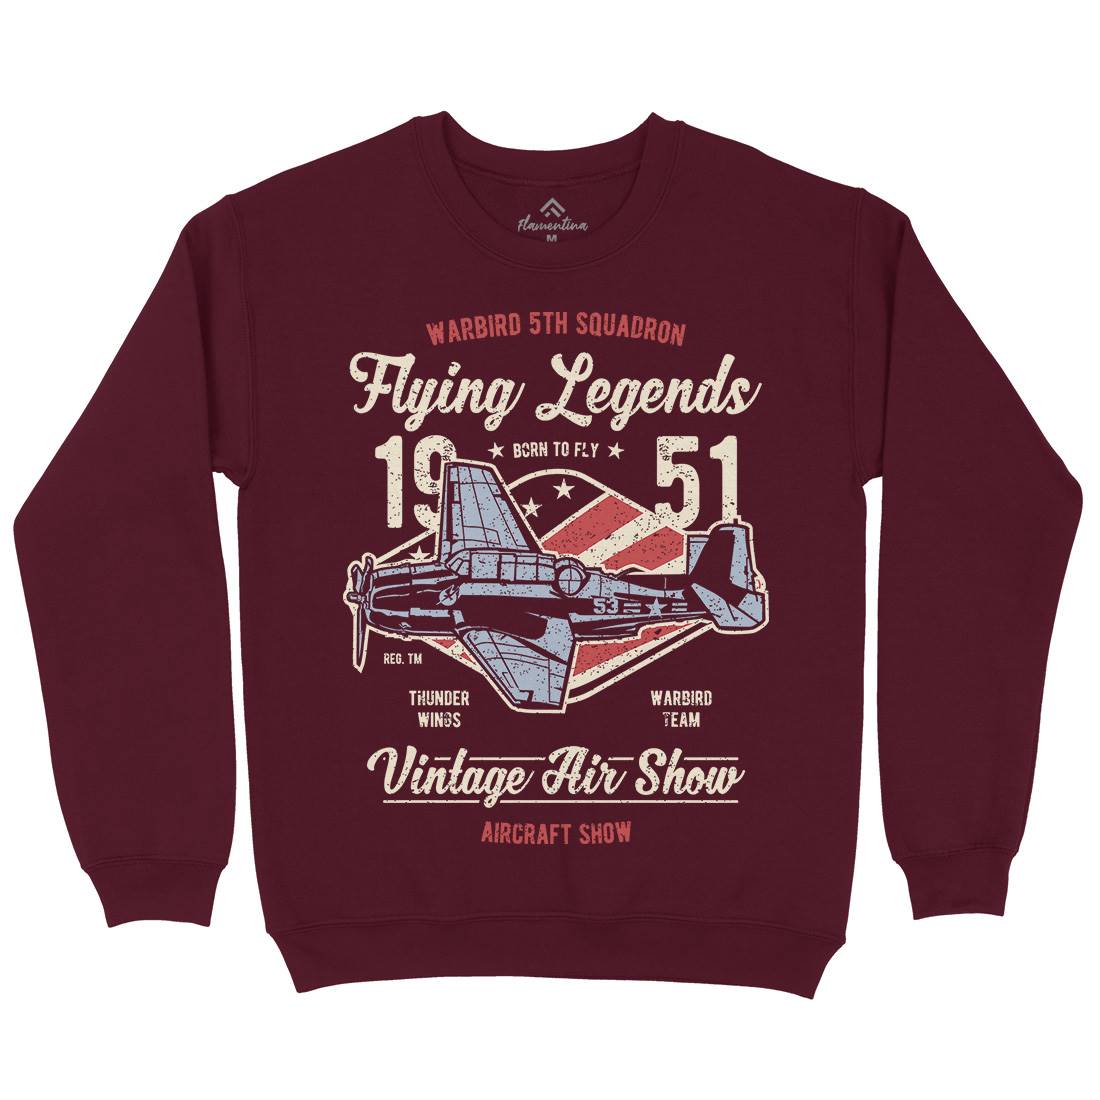 Flying Legends Kids Crew Neck Sweatshirt Vehicles A664